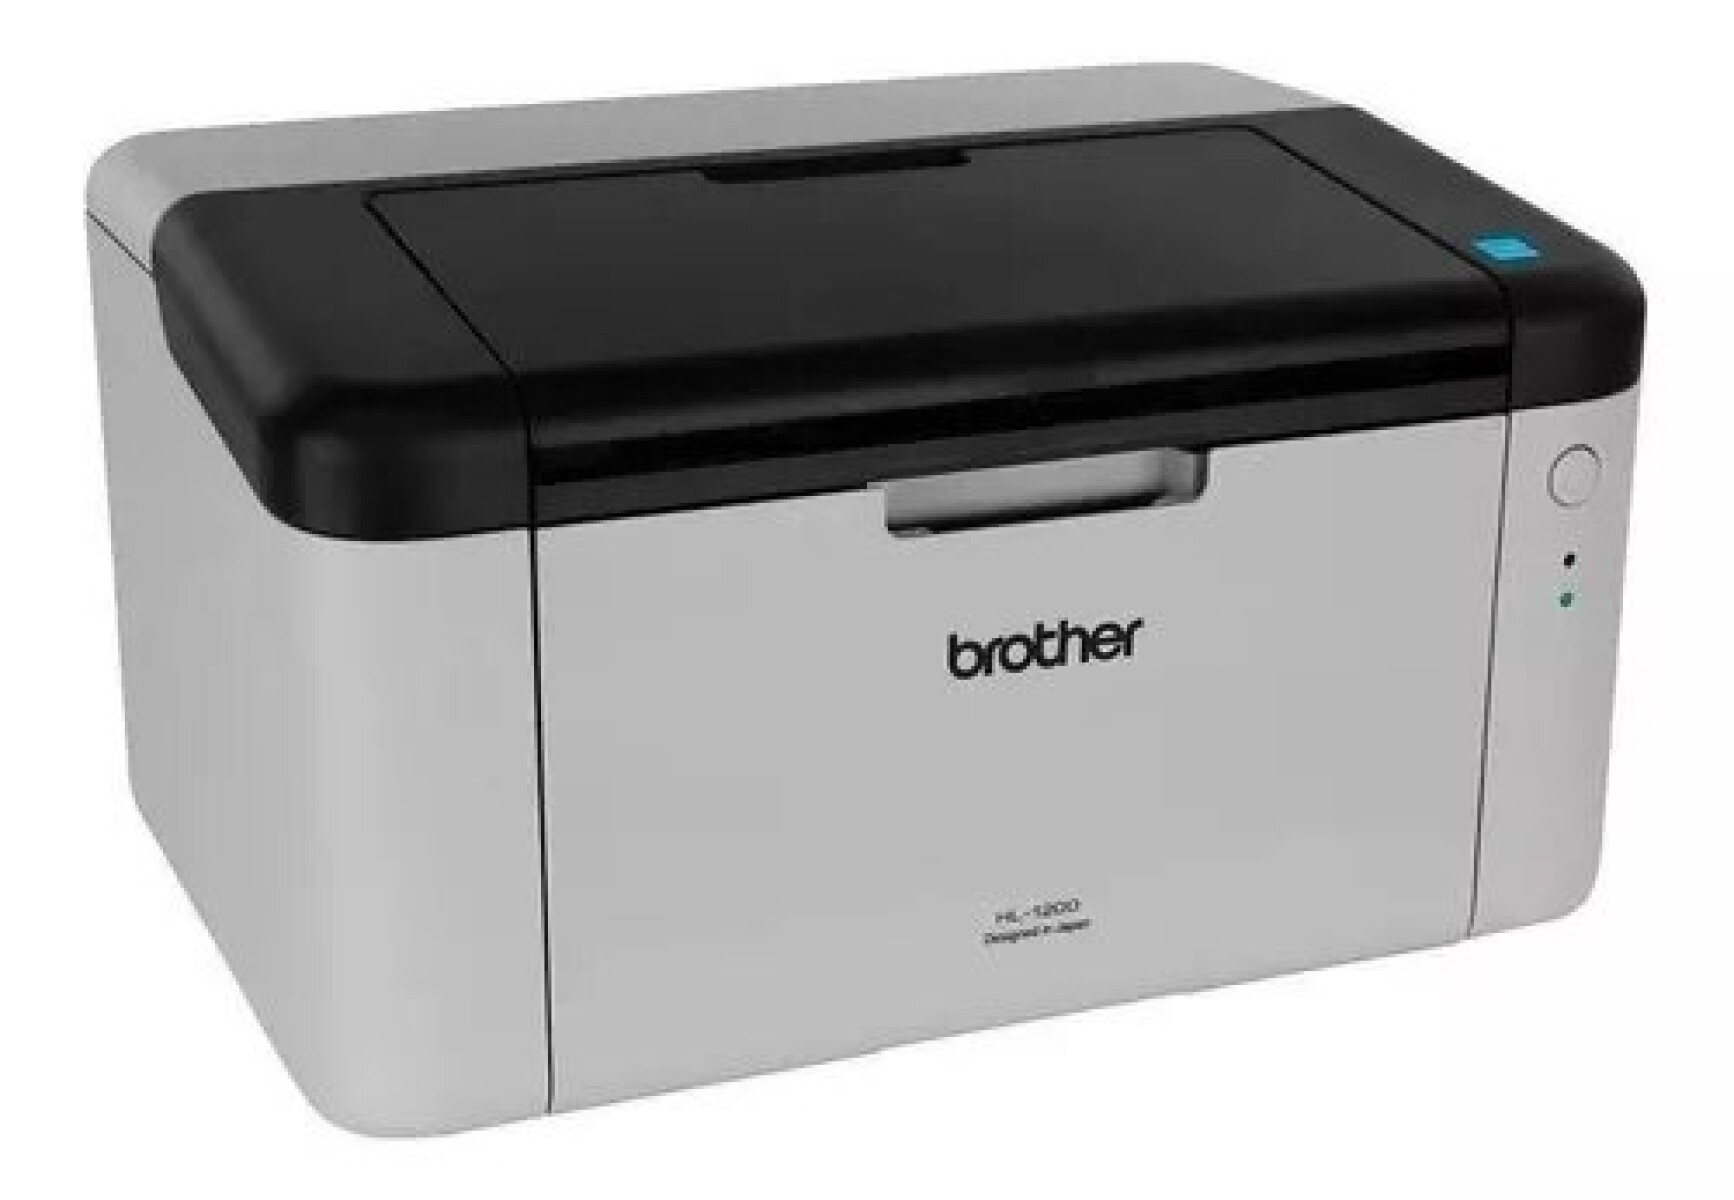 Impresora Simple Función Brother Láser Usb Hl-1200 Blanca Y Negra 220v - 240v 